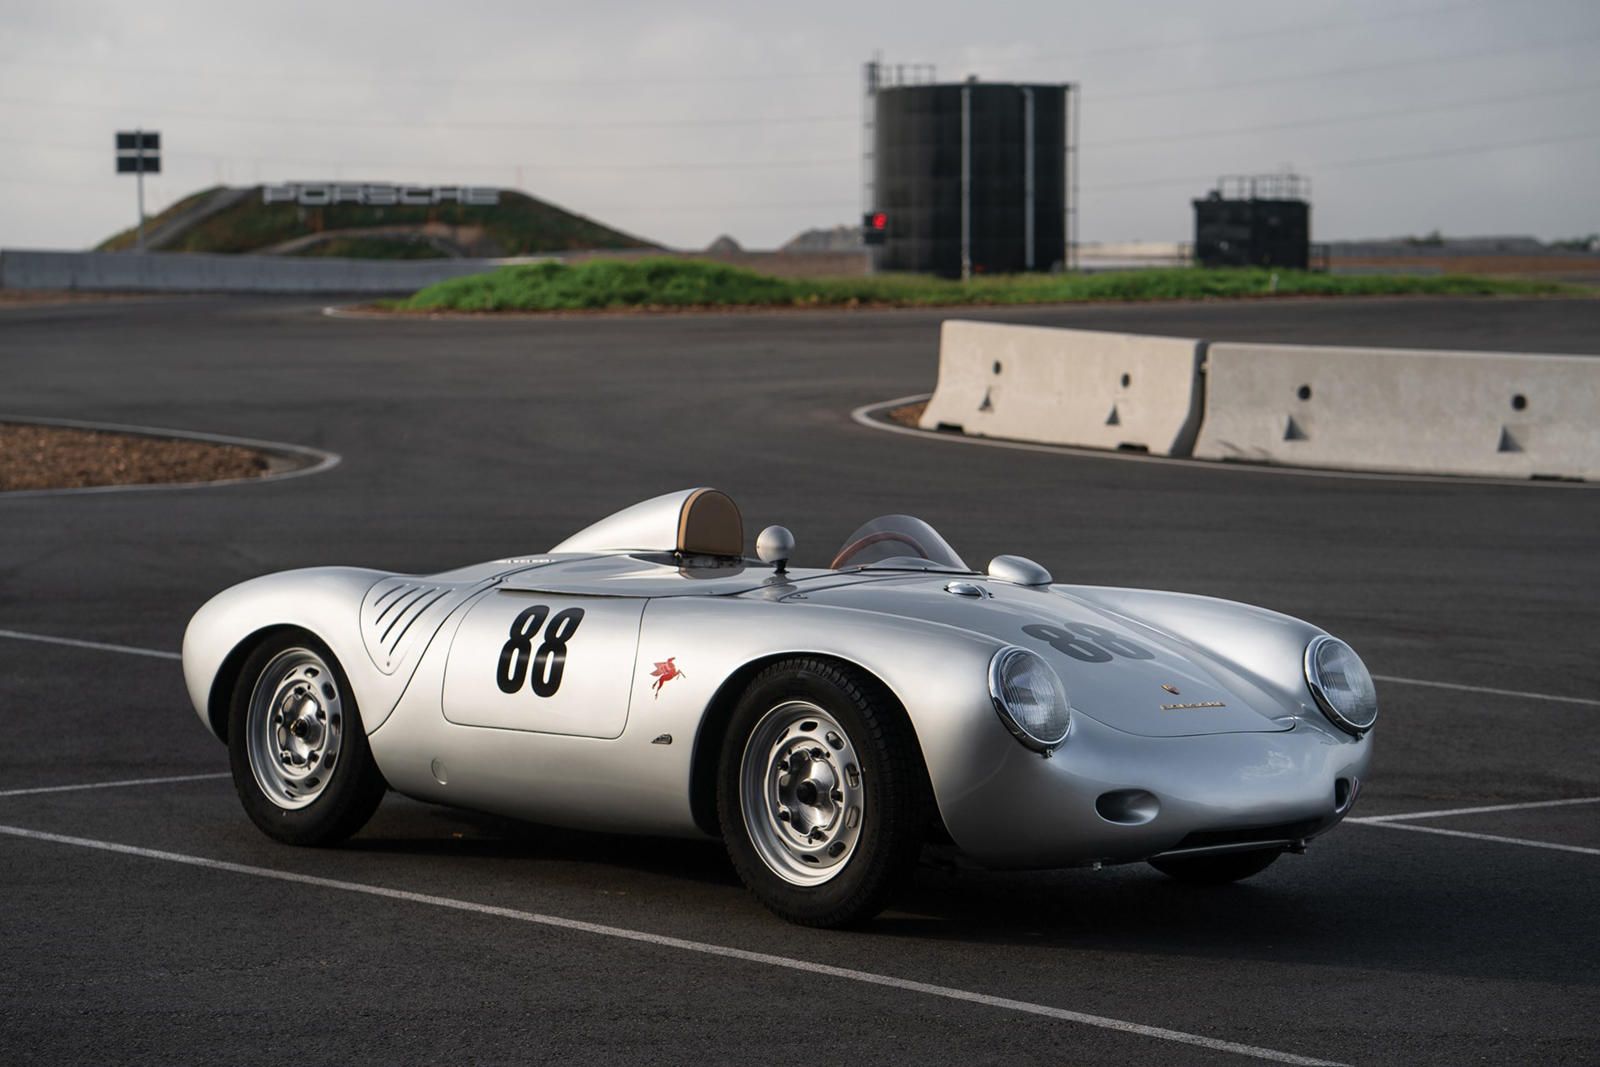 <img src="auction-550-spyder.jpg" alt="The 1957 Porsche 550 Spyder">